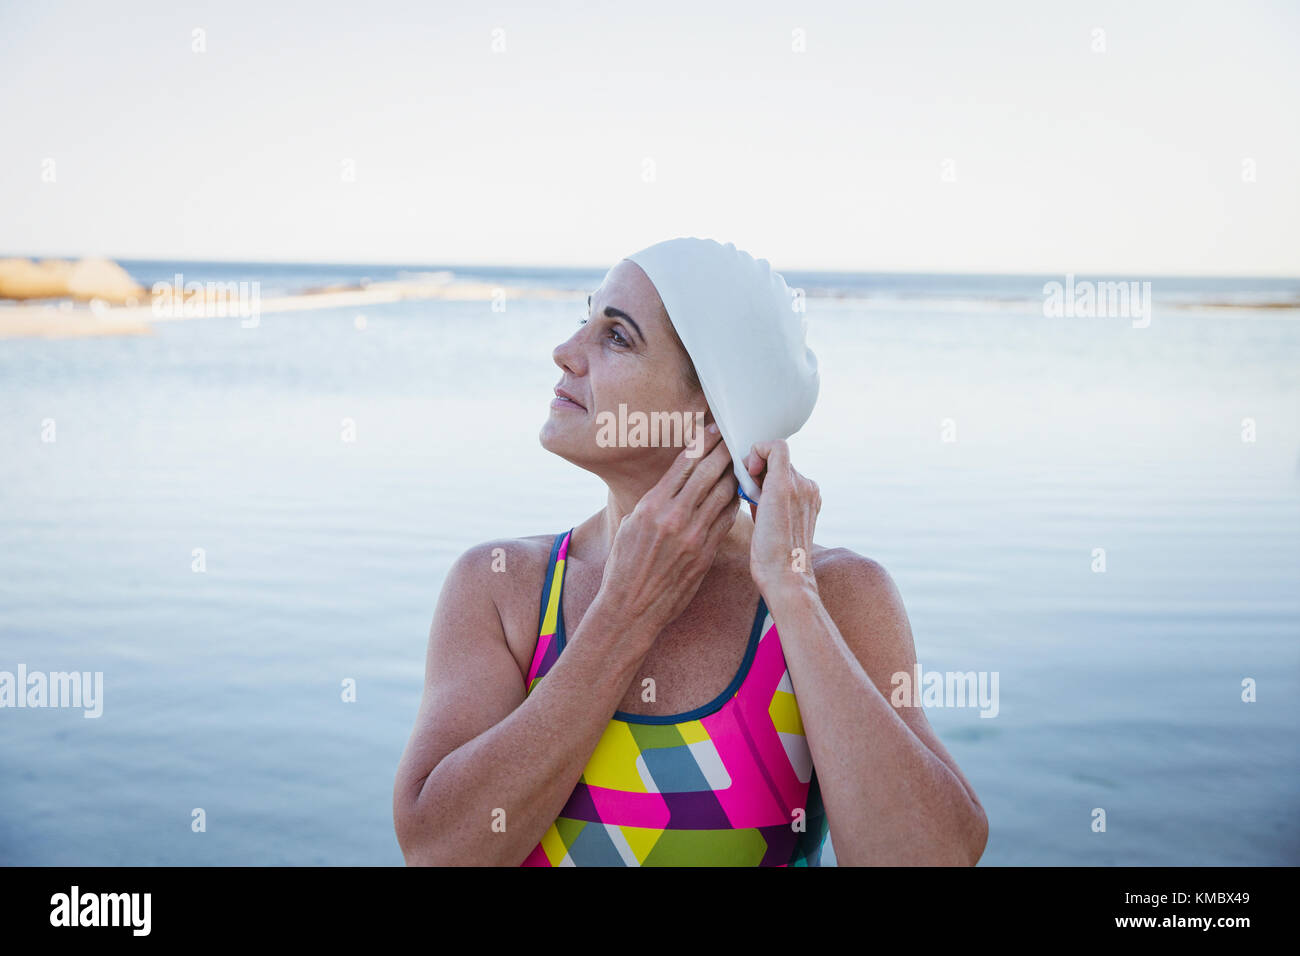 Nuotatore femminile ad acqua aperta che attorcigliano i capelli nella cuffia da bagno surf oceano Foto Stock